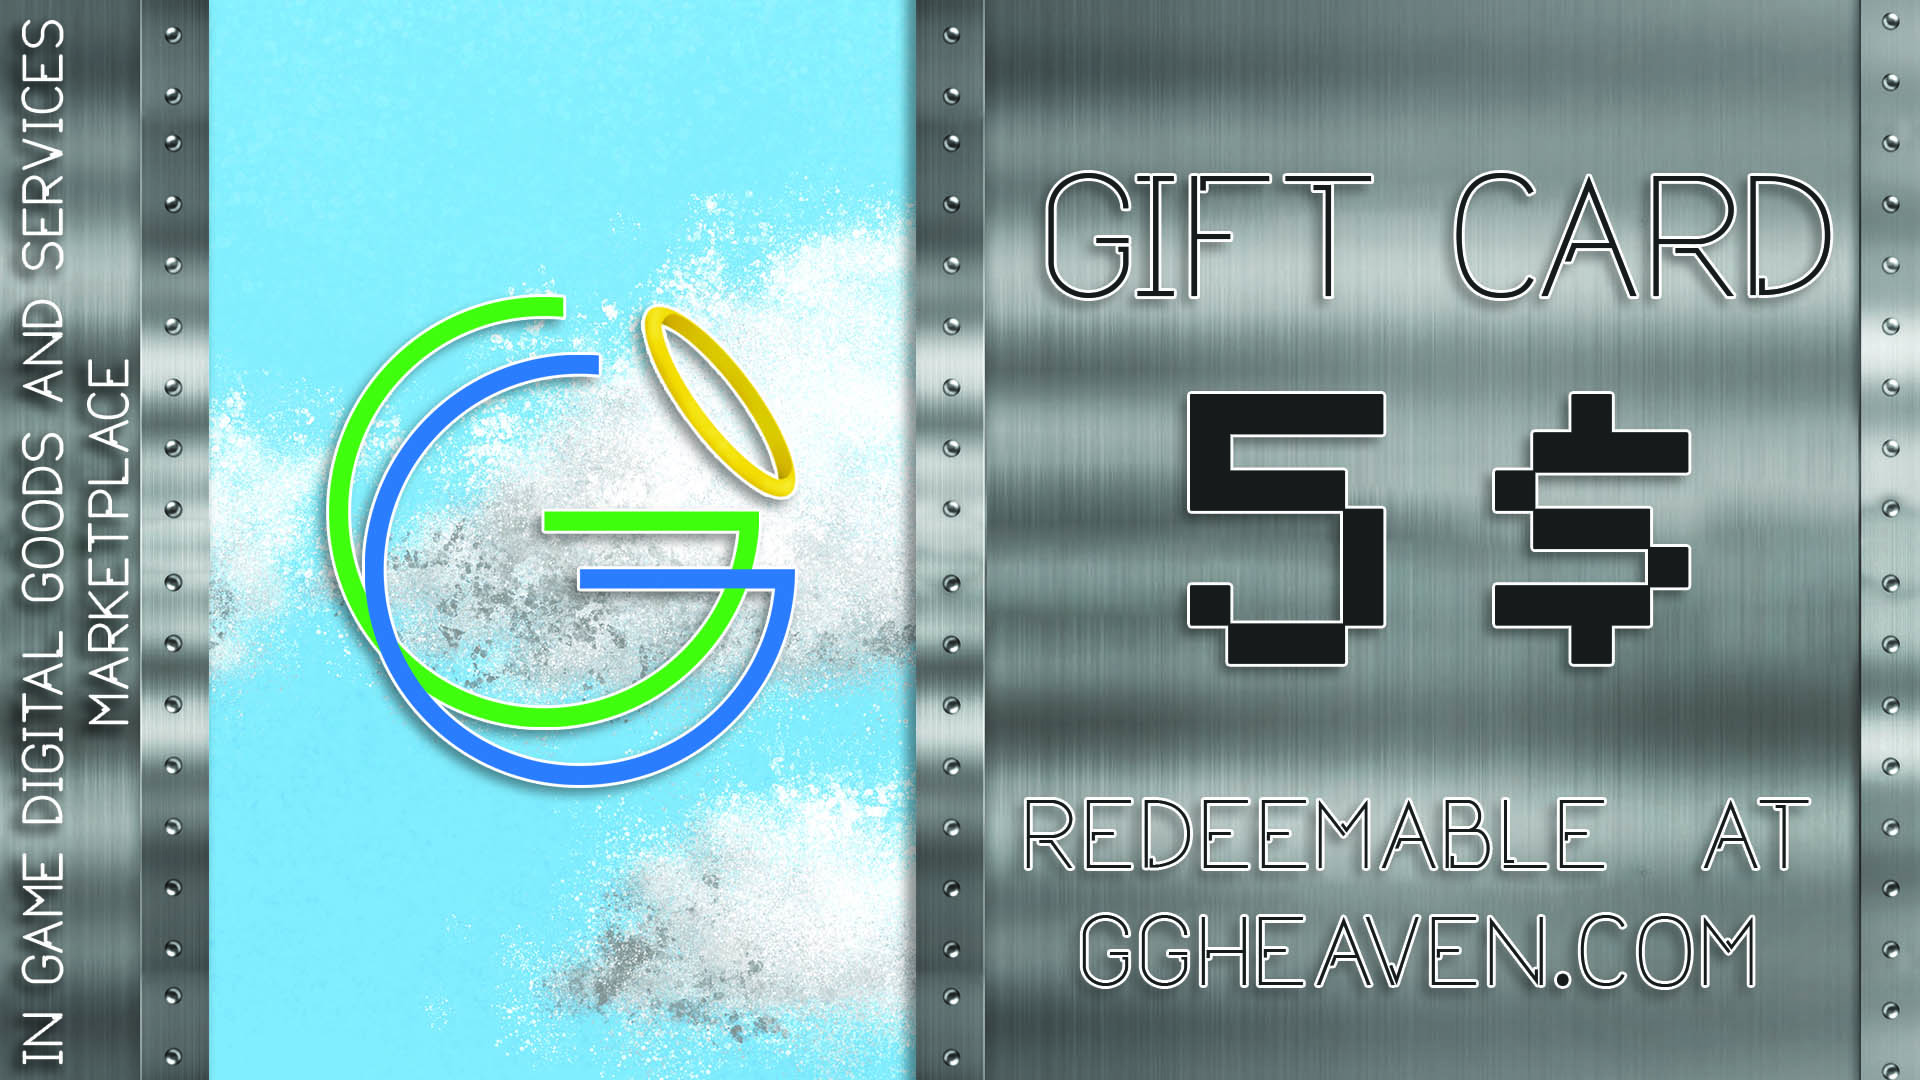 (6.27$) GGHeaven.com 5$ Gift Card